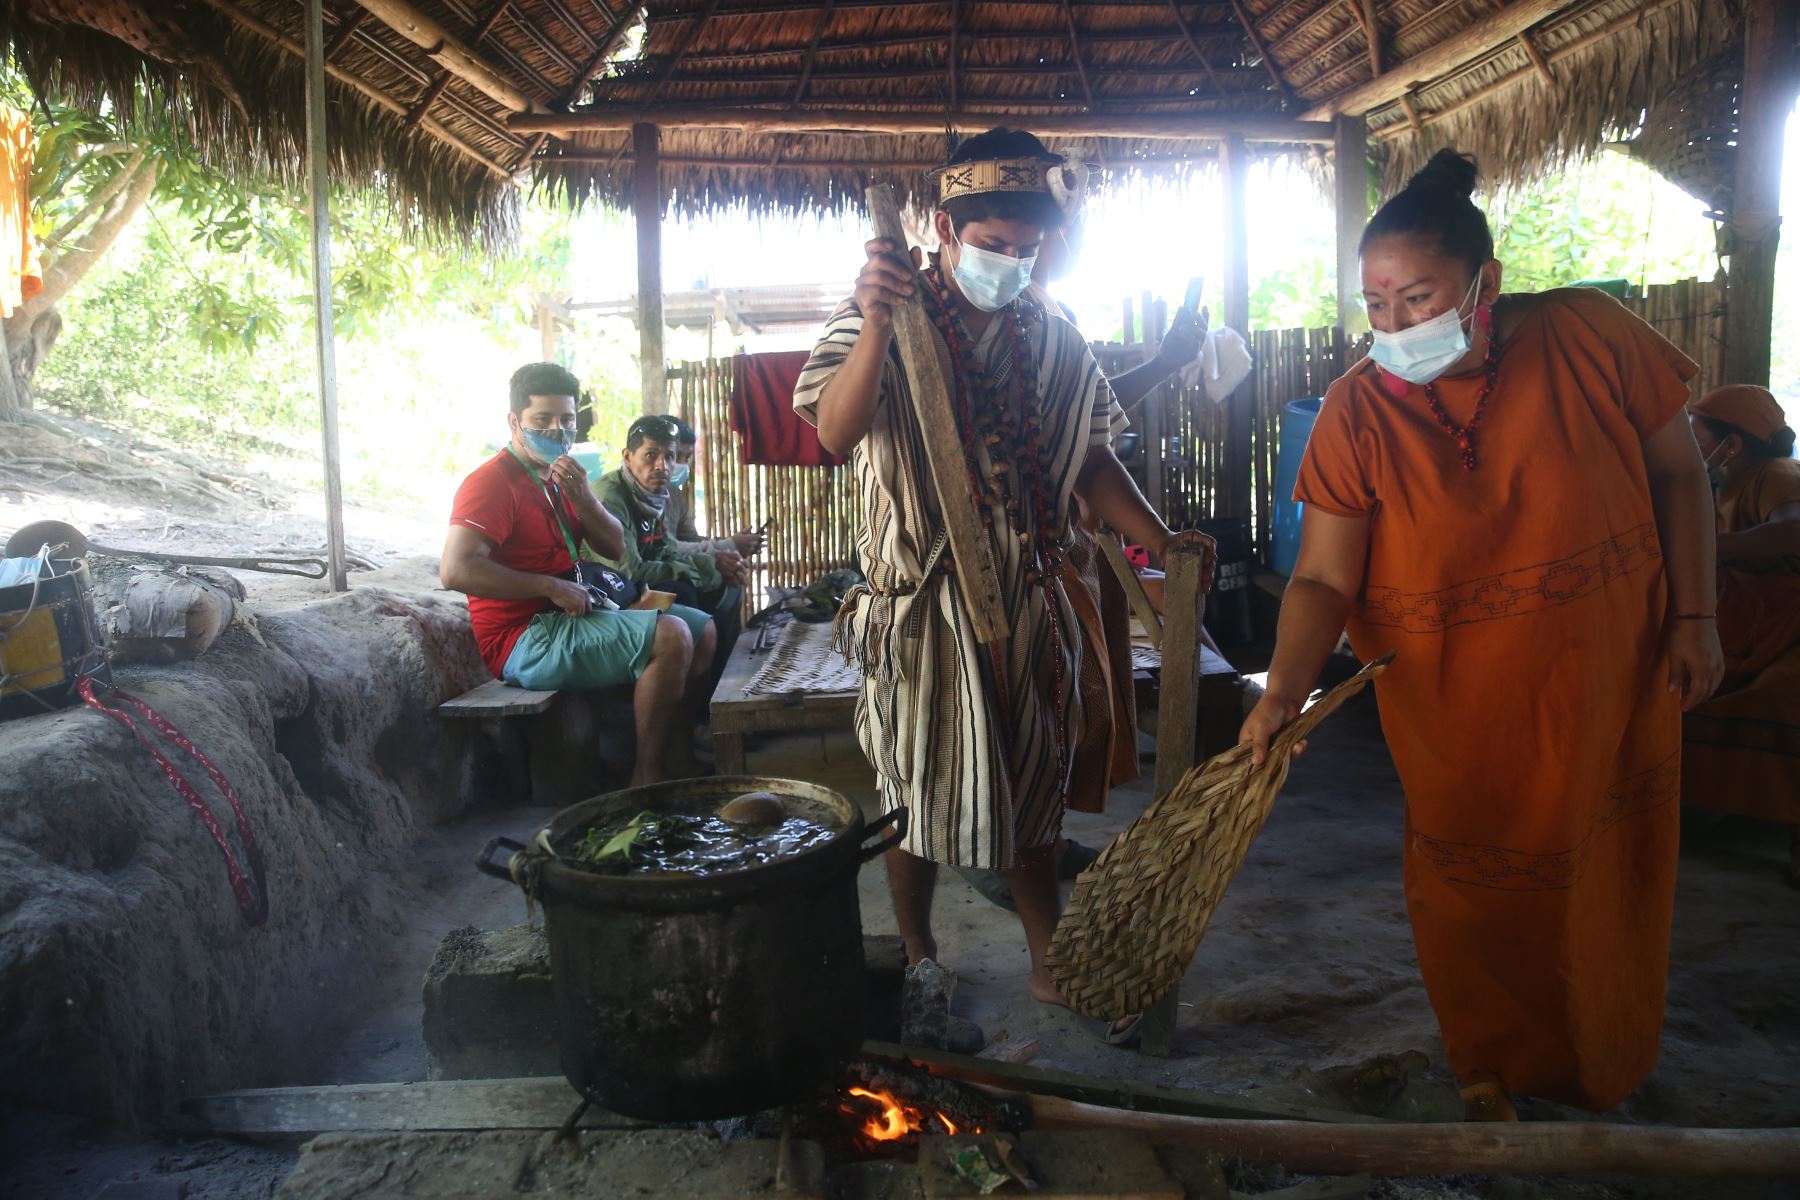 Visita a la comunidad nativa de bajo Quimiriki aldea de la Salud.
Foto: ANDINA/Vidal Tarqui